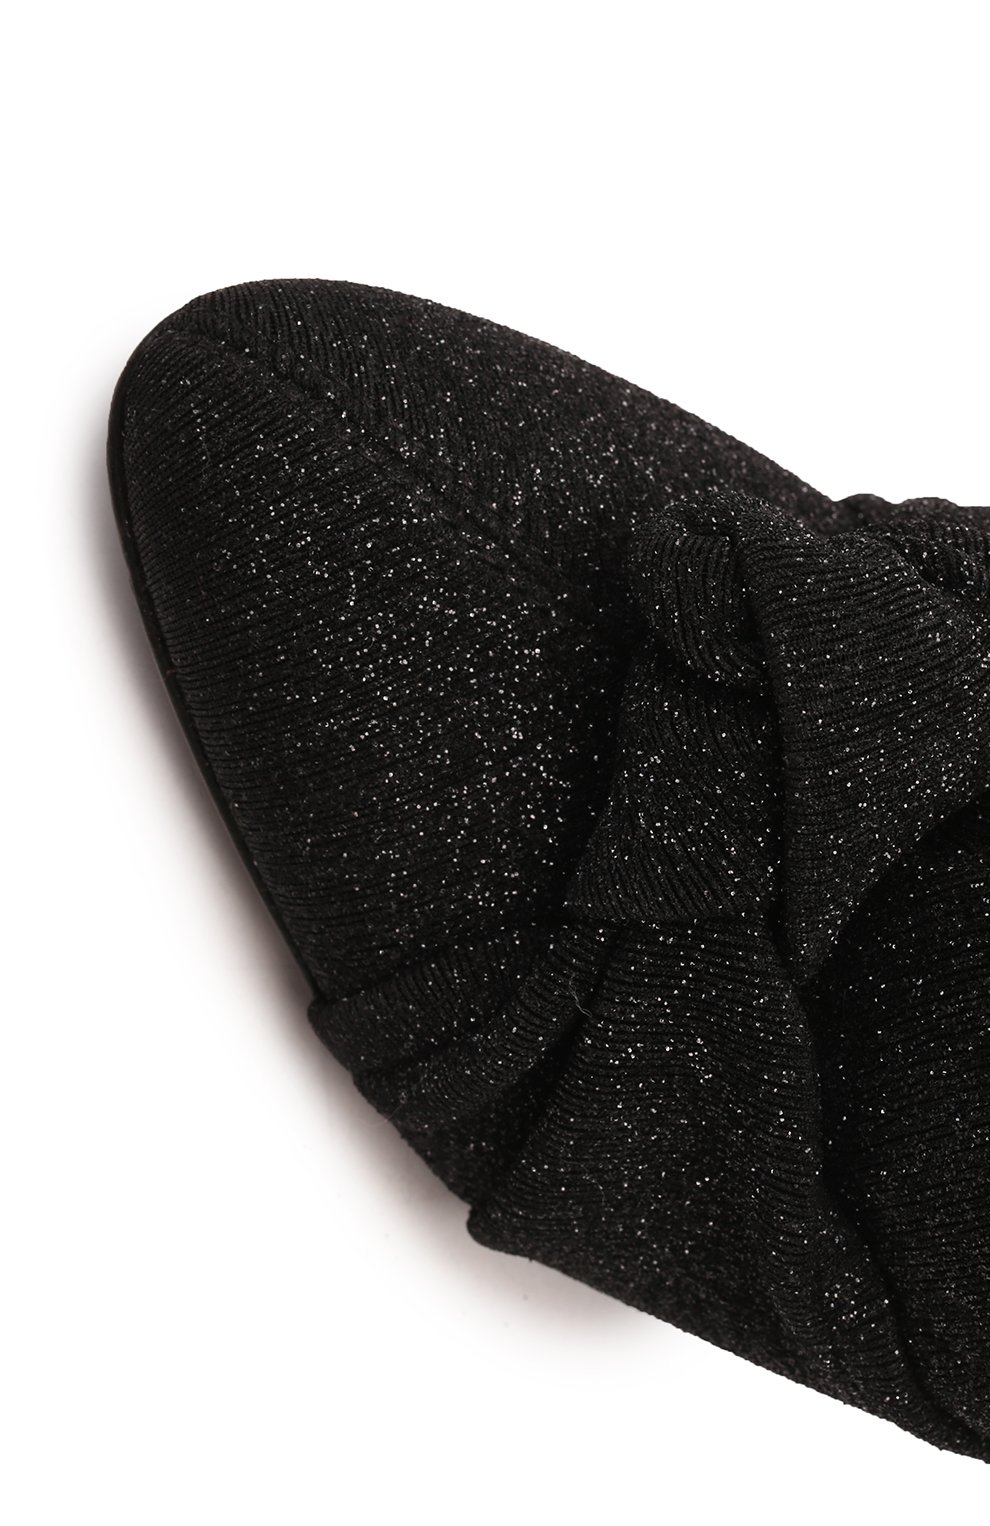 Текстильные ботфорты | Giuseppe Zanotti Design | Чёрный - 8